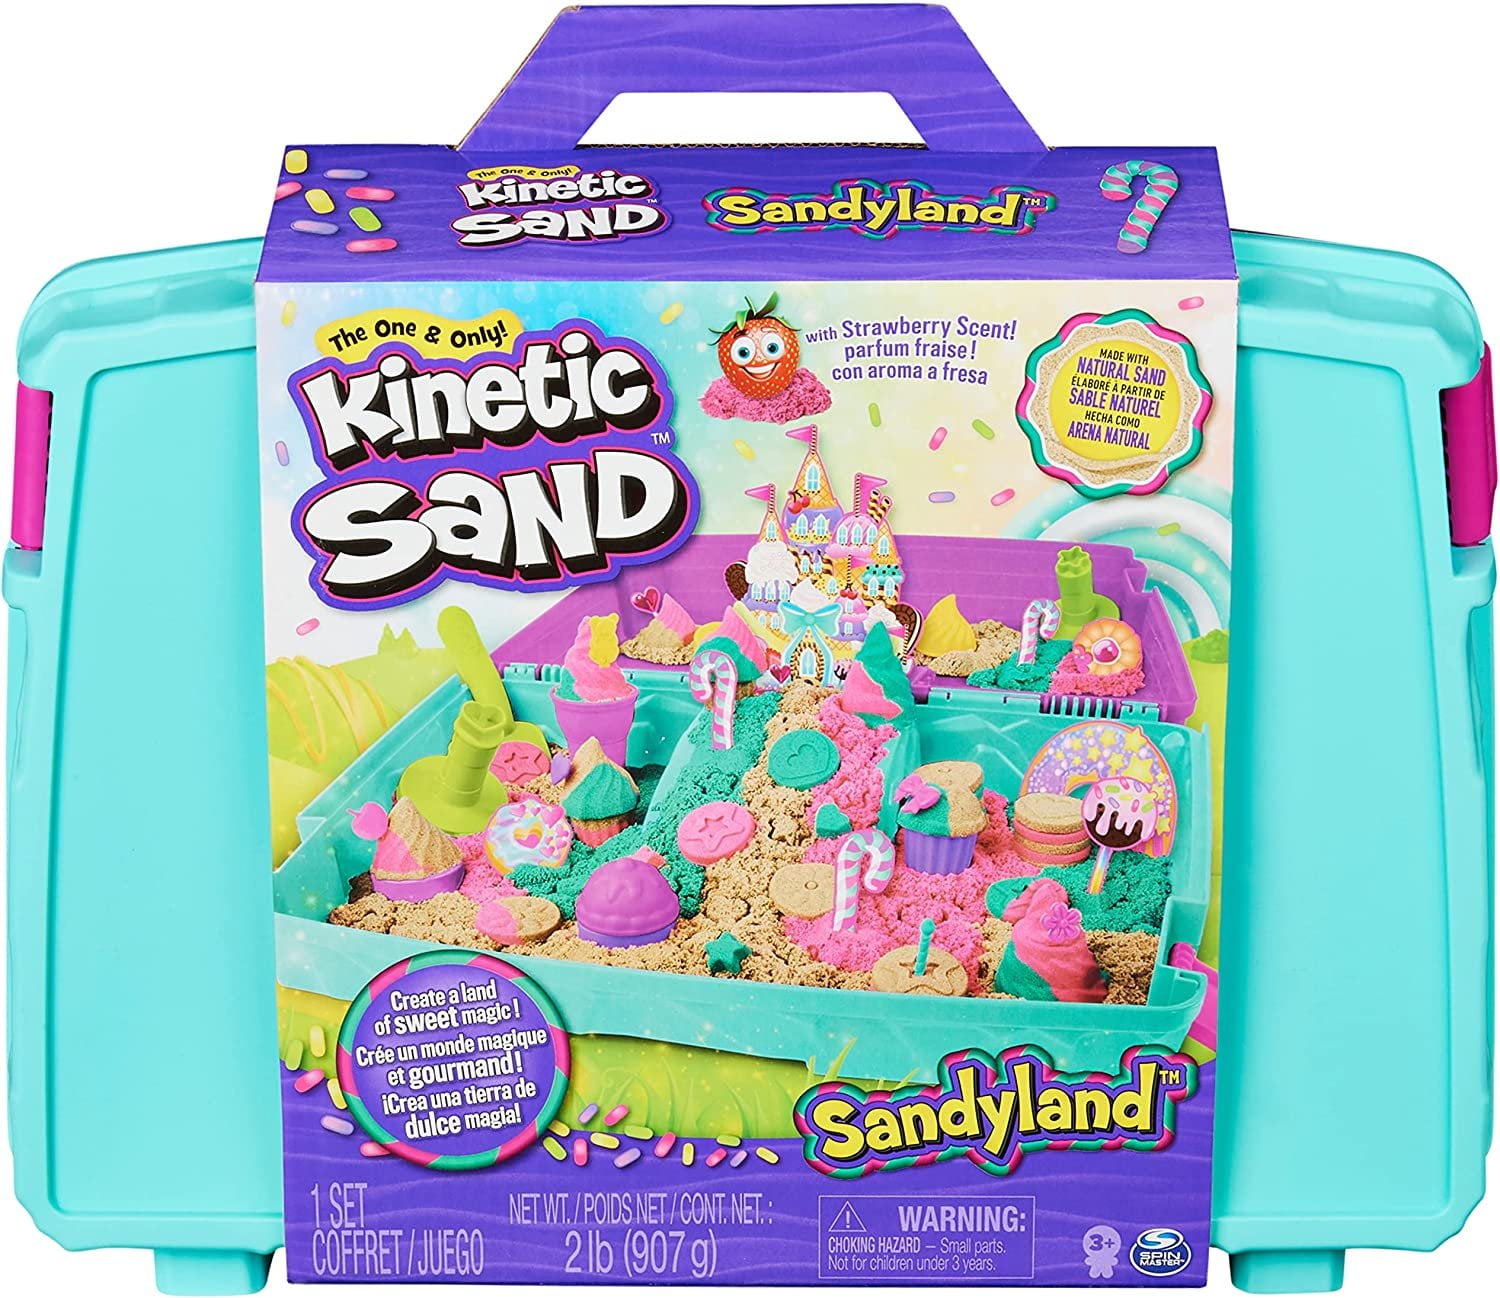 Kinetic Sand Sandyland with 2lbs of Kinetic Sand, Portable Playset